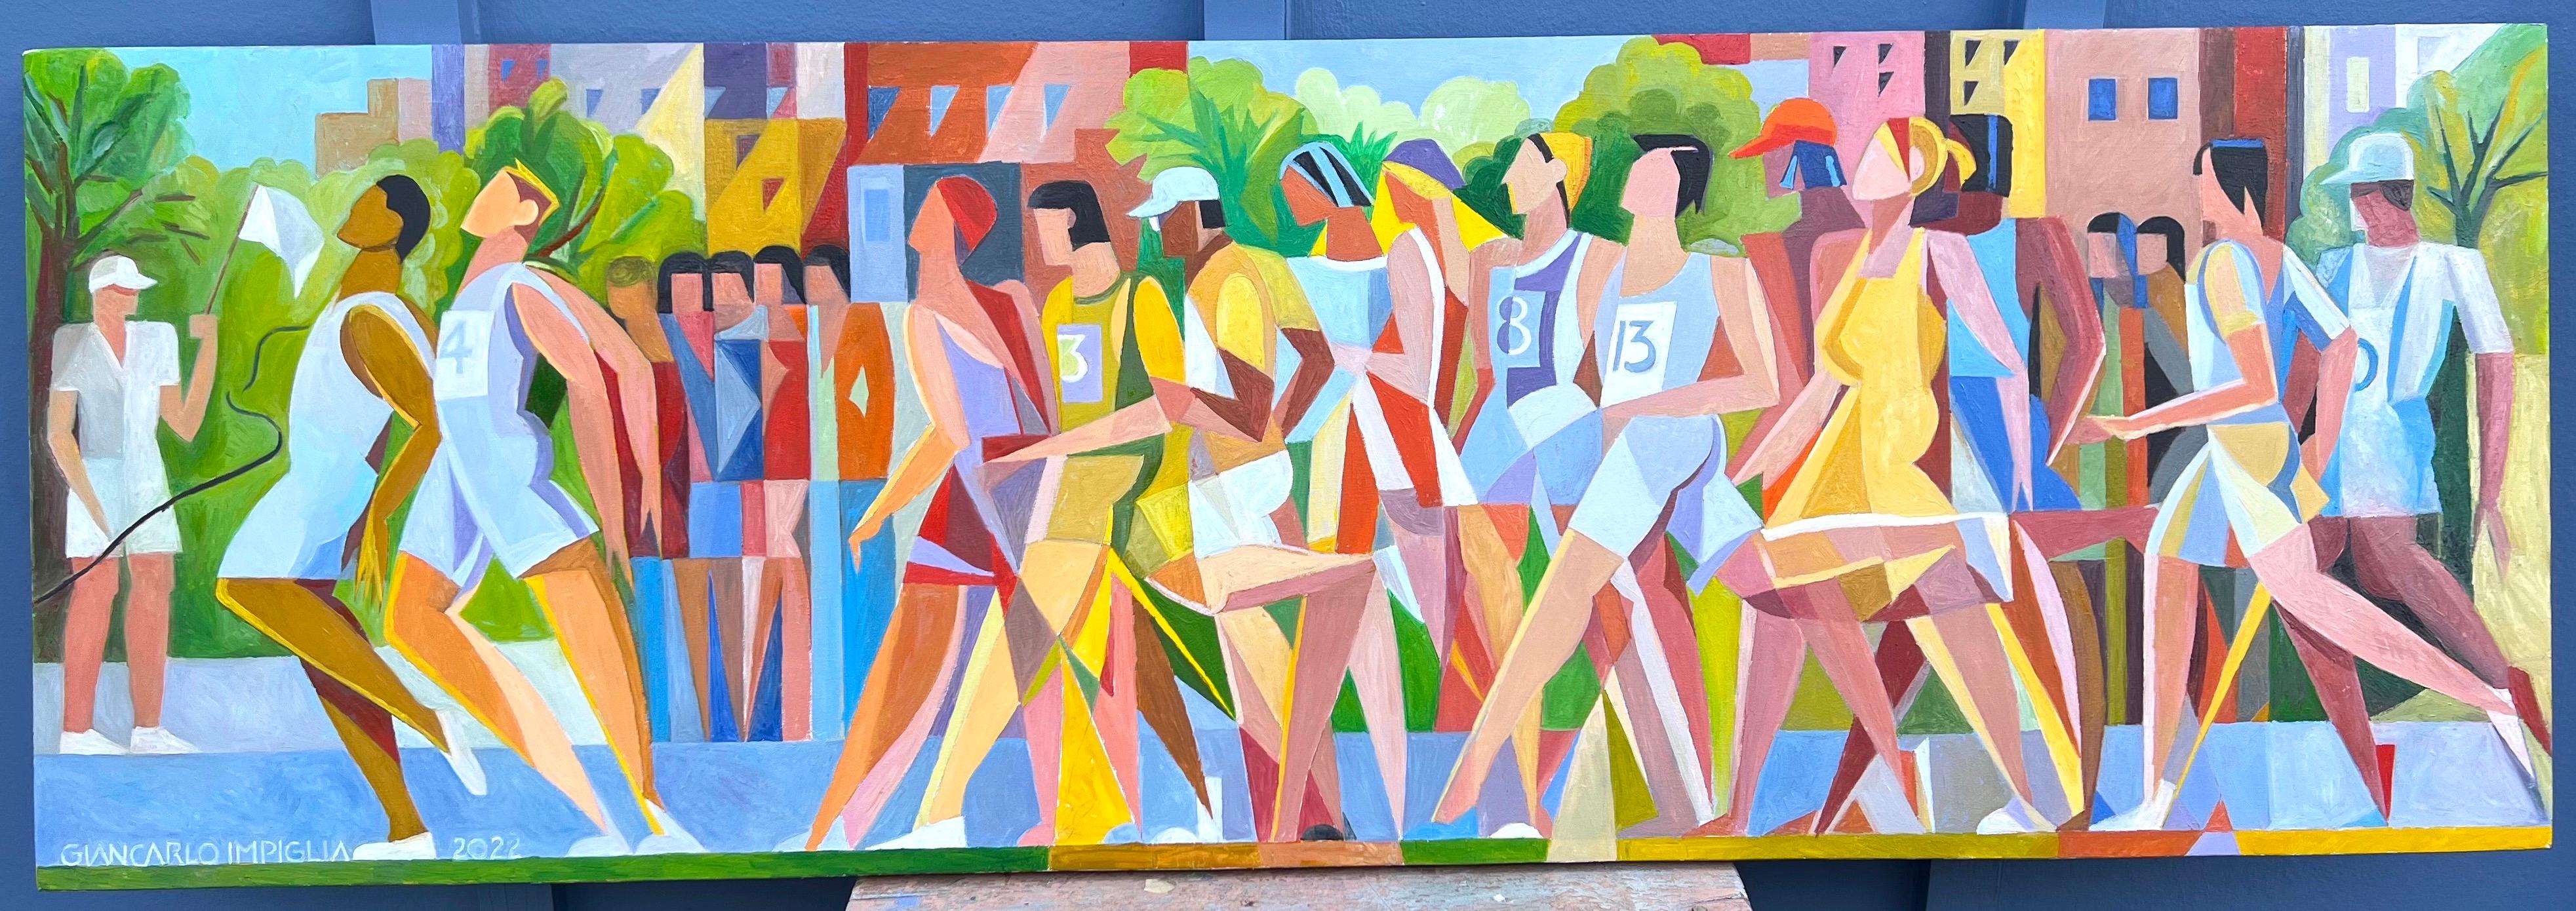 Giancarlo Impiglia Abstract Painting – Dynamisches Ölgemälde im kubistischen Stil „Marathon“-Läufer und Olympische Spiele 